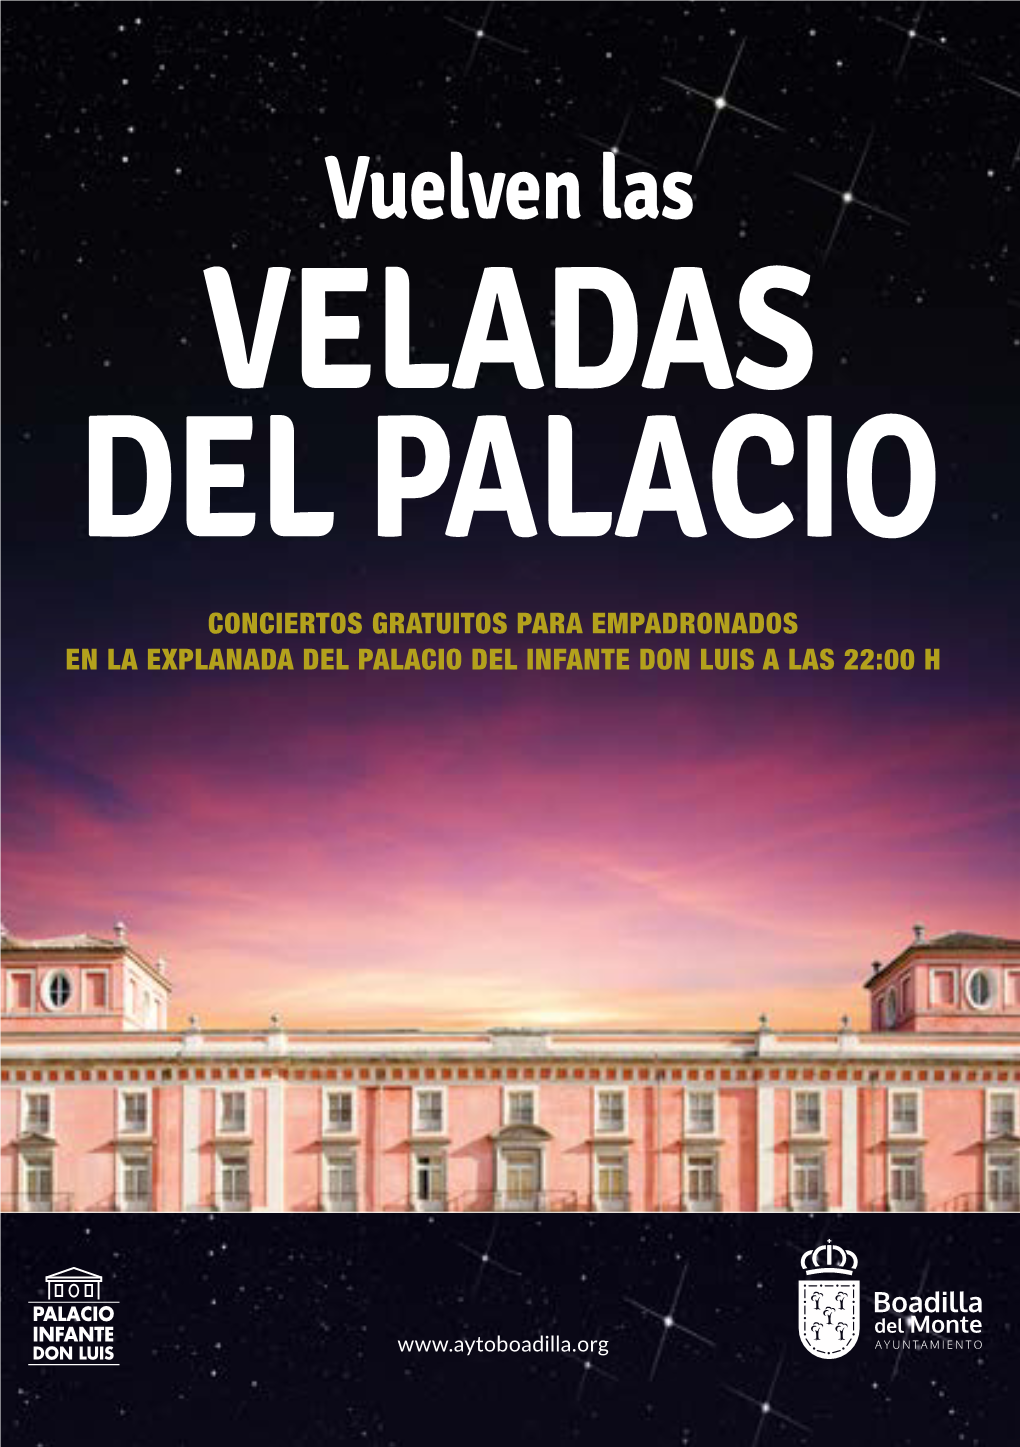 Vuelven Las VELADAS DEL PALACIO